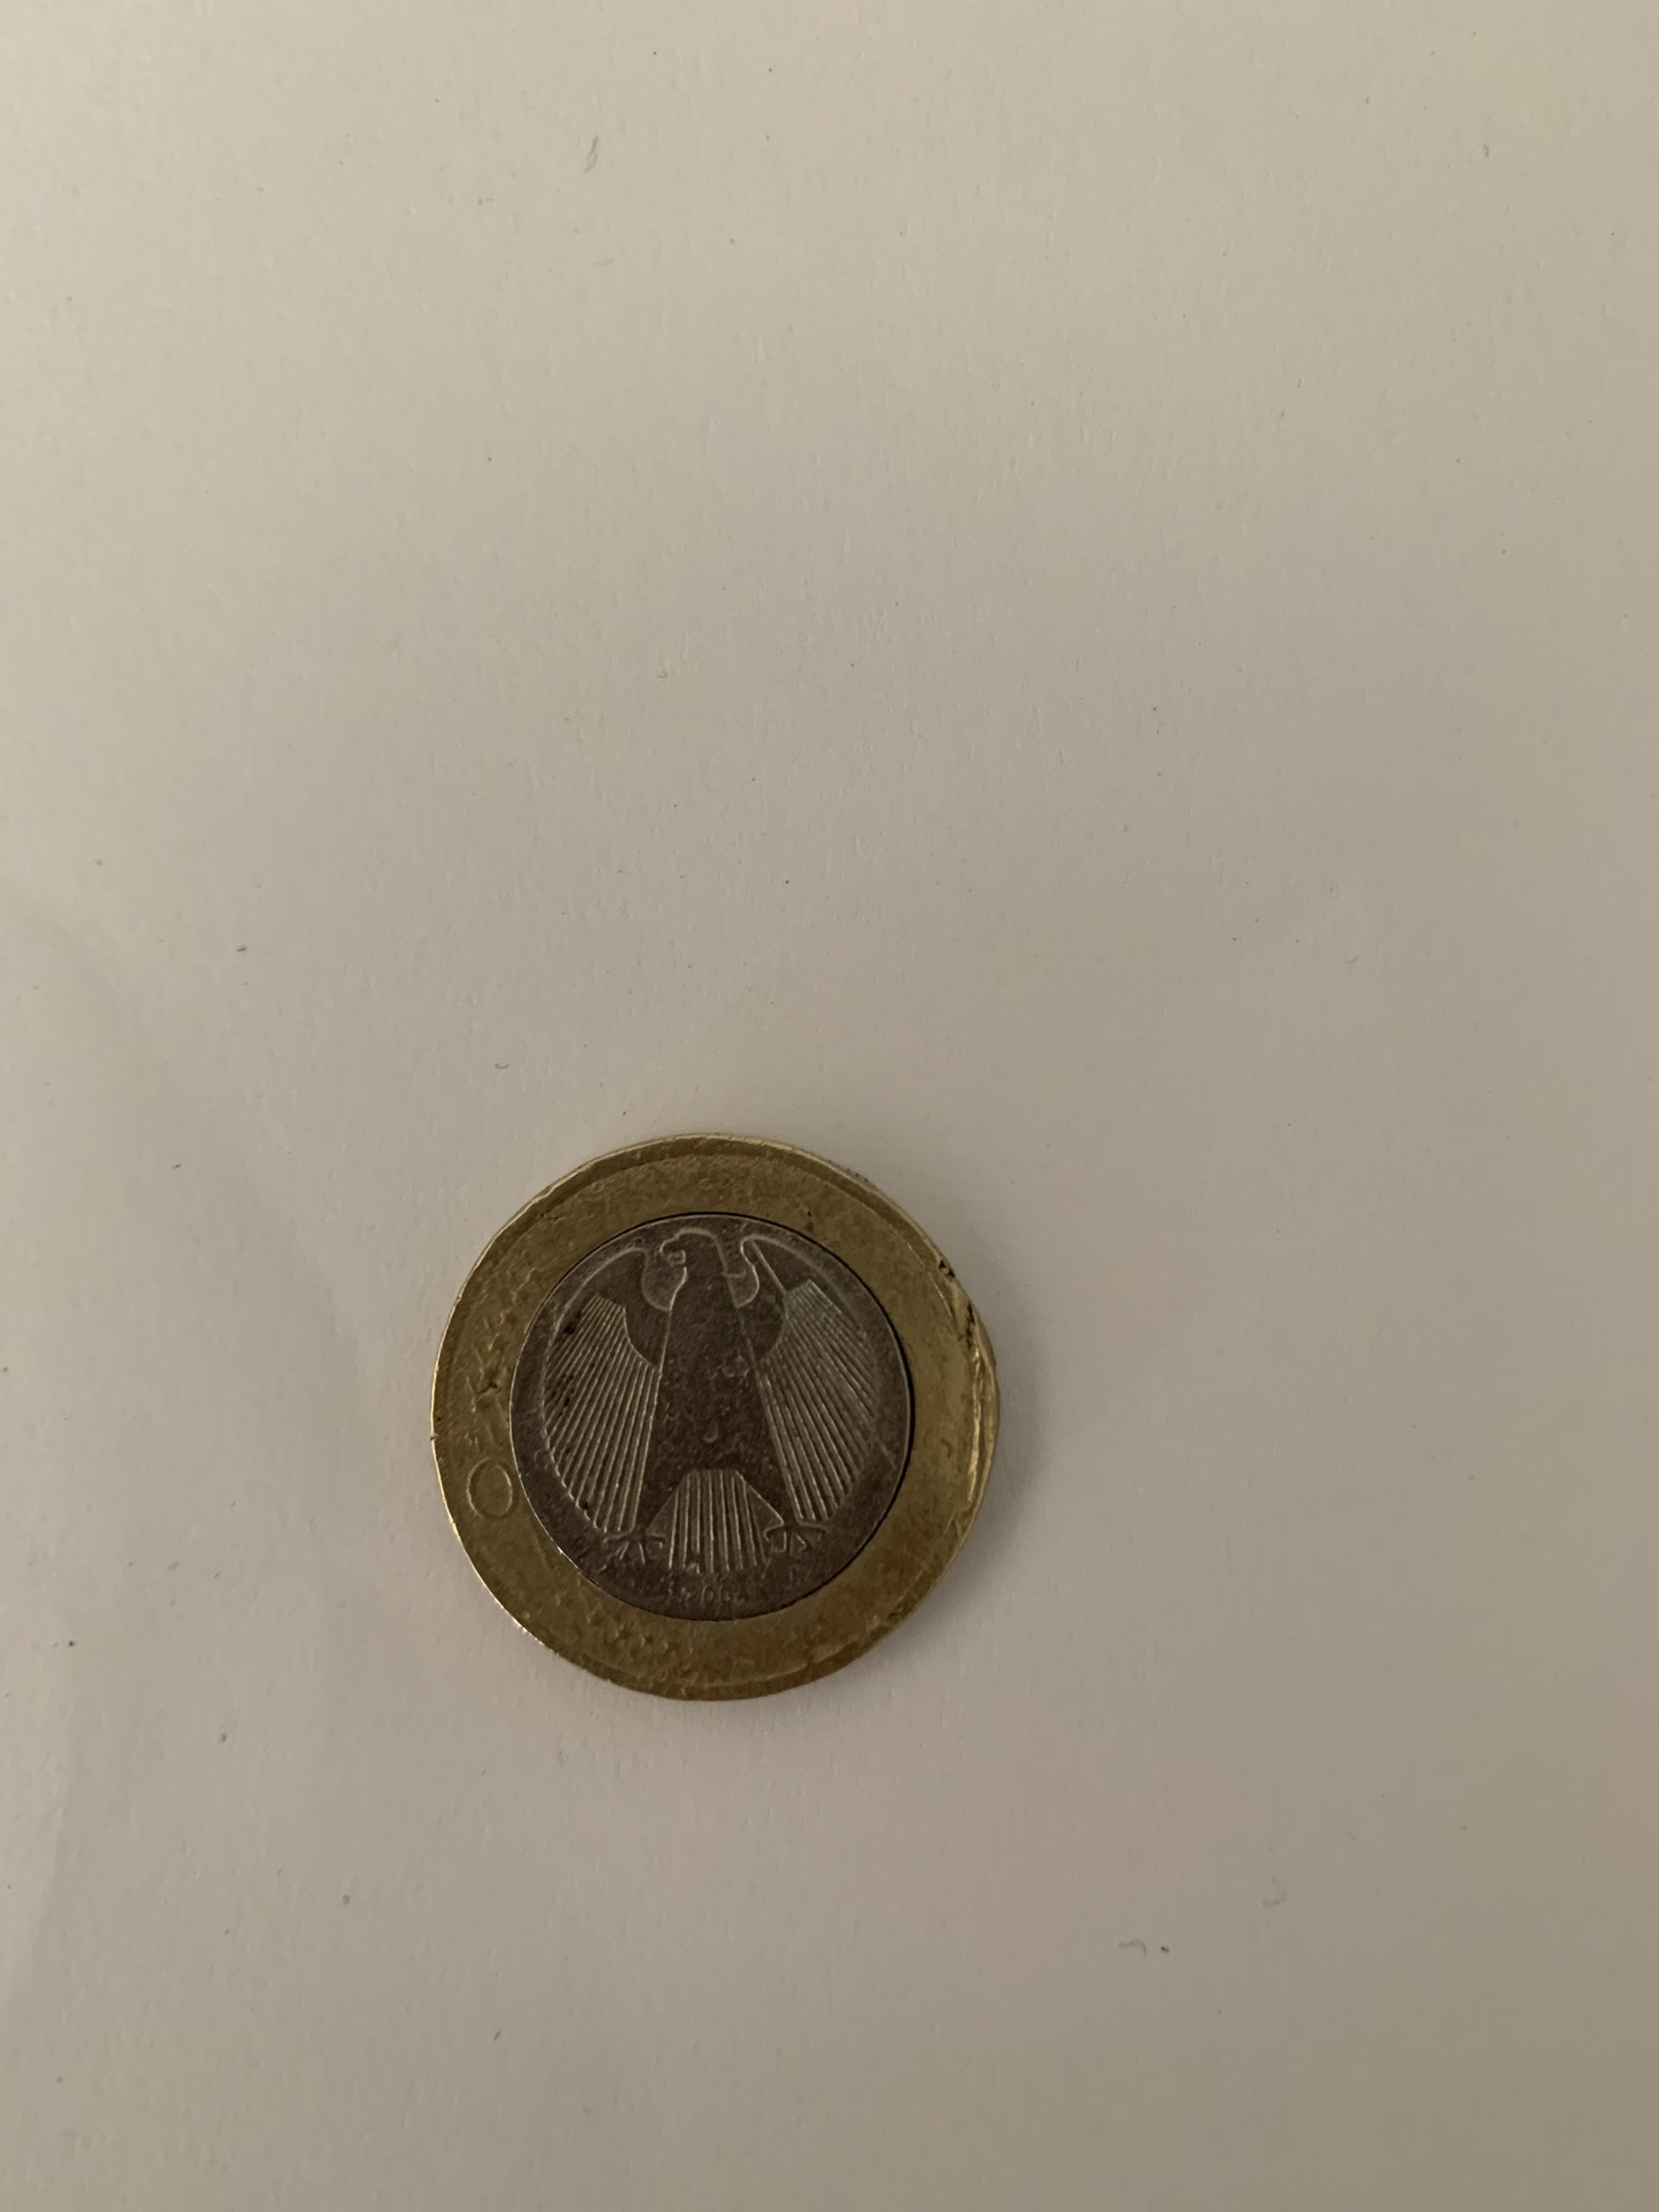 error coin: Fehlprägung einer 1 Euro Münze